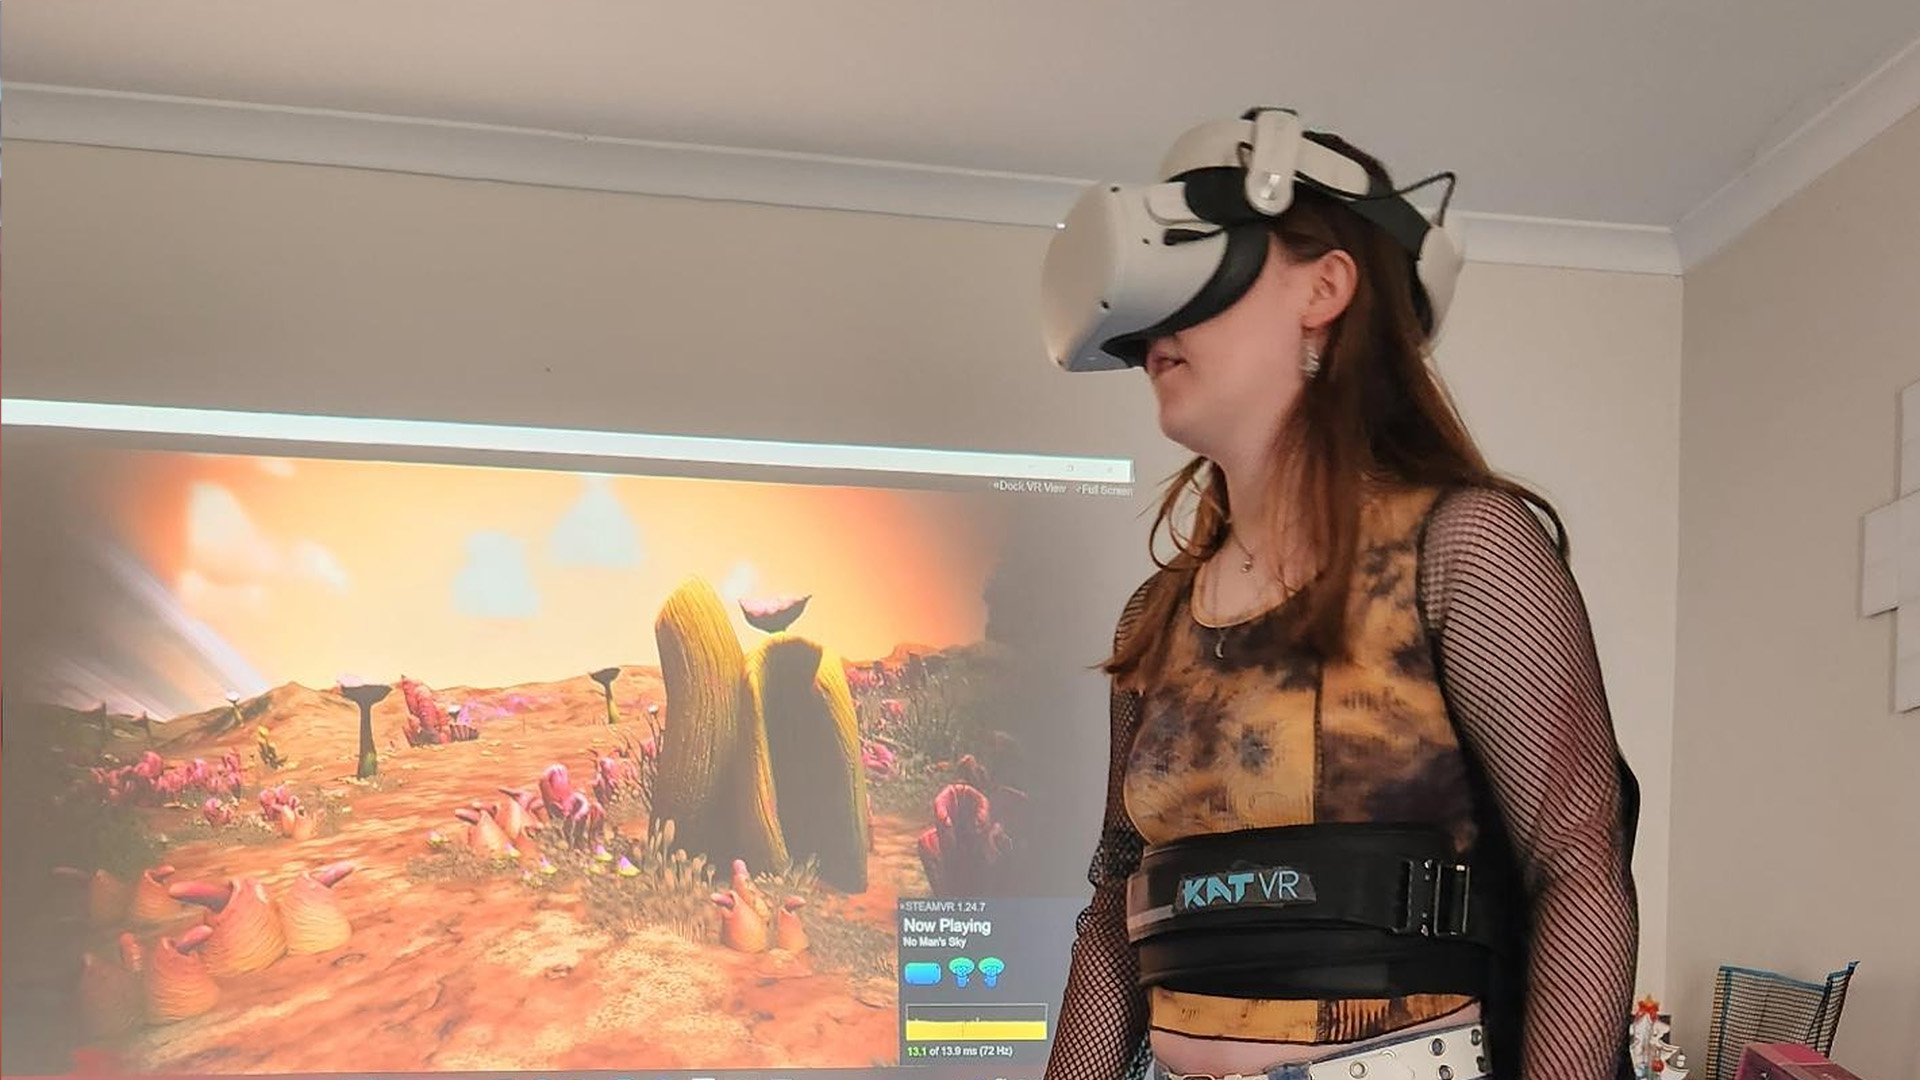 İlk zamanlayıcılar tarafından kullanılan Kat VR koşu bandı.